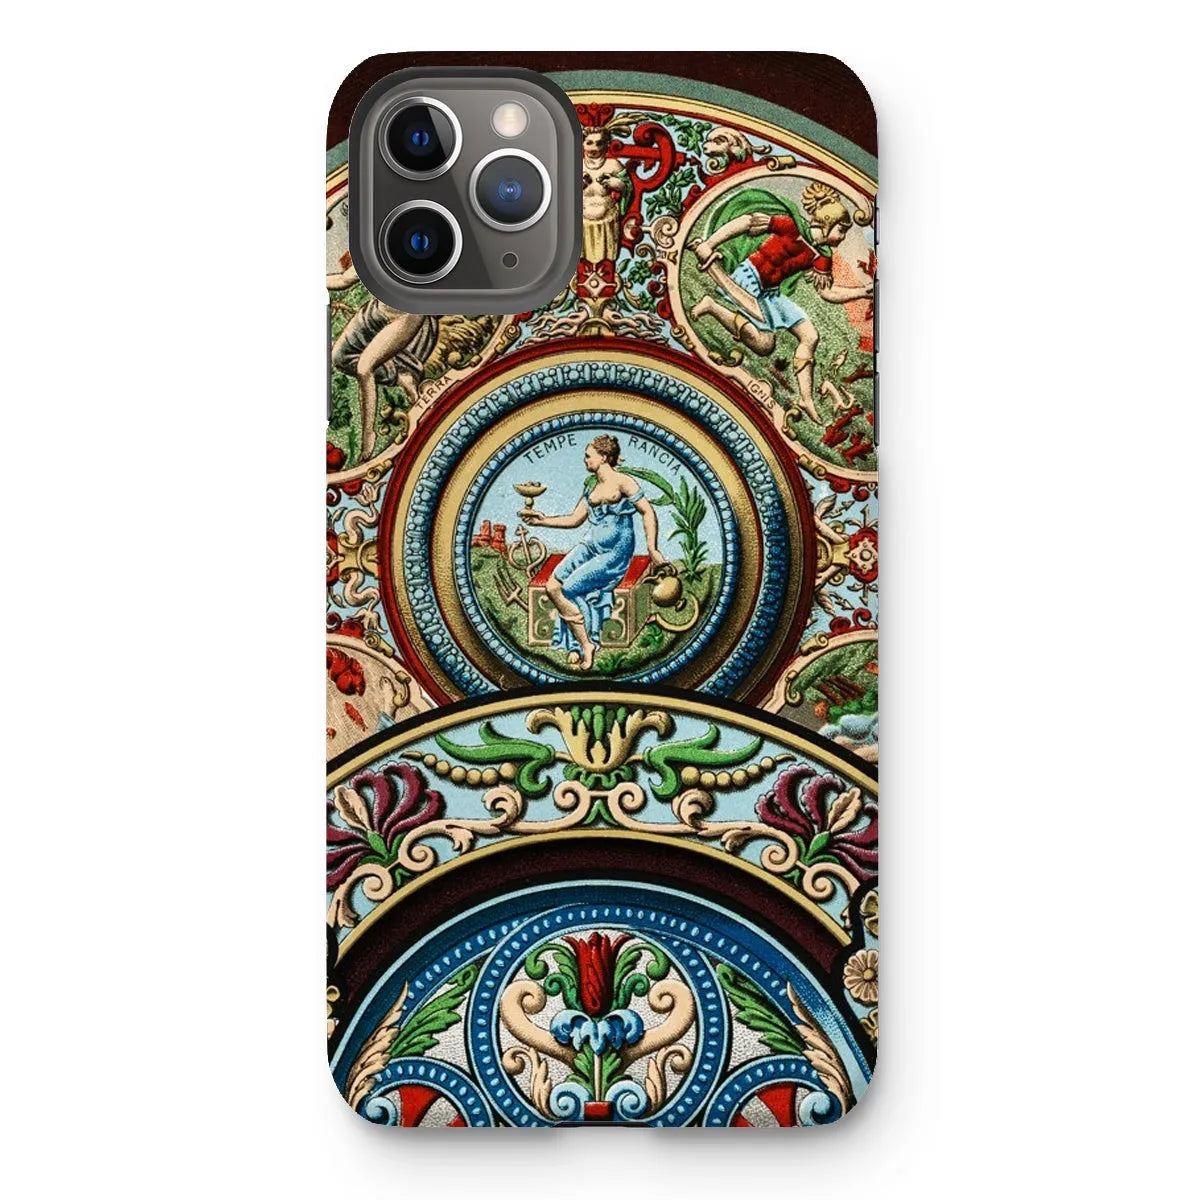 Renaissance Pattern By Auguste Racinet Tough Phone Case - Iphone 11 Pro Max / Matte - Aesthetic Art